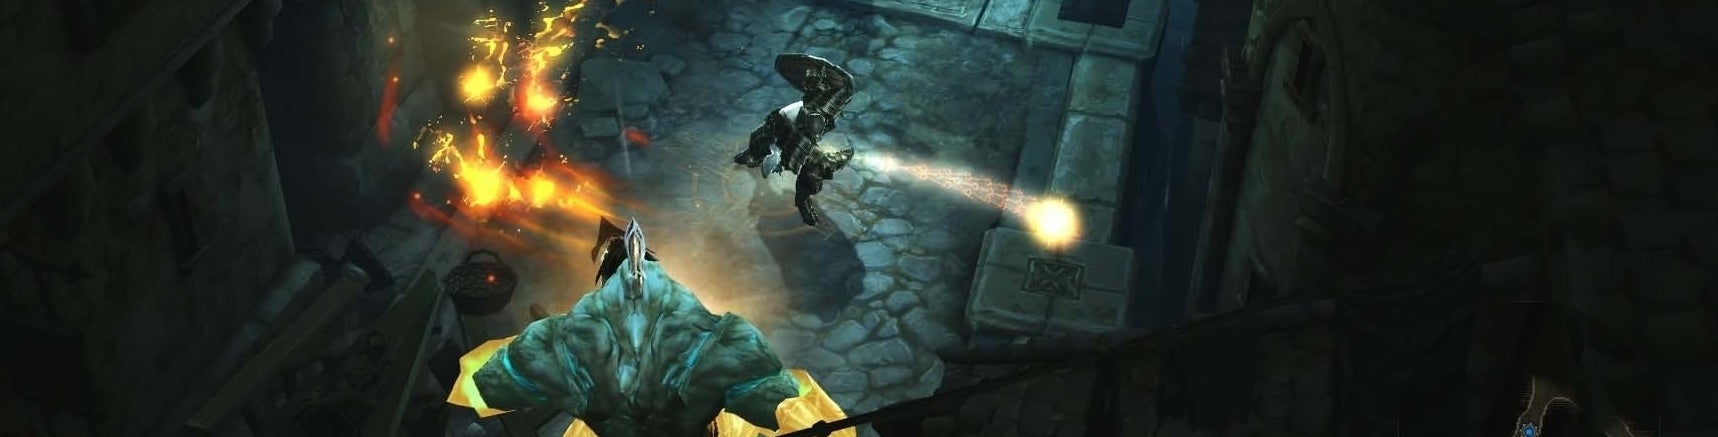 Image for Diablo 3: Reaper of Souls - desítky minut z dnes započaté bety